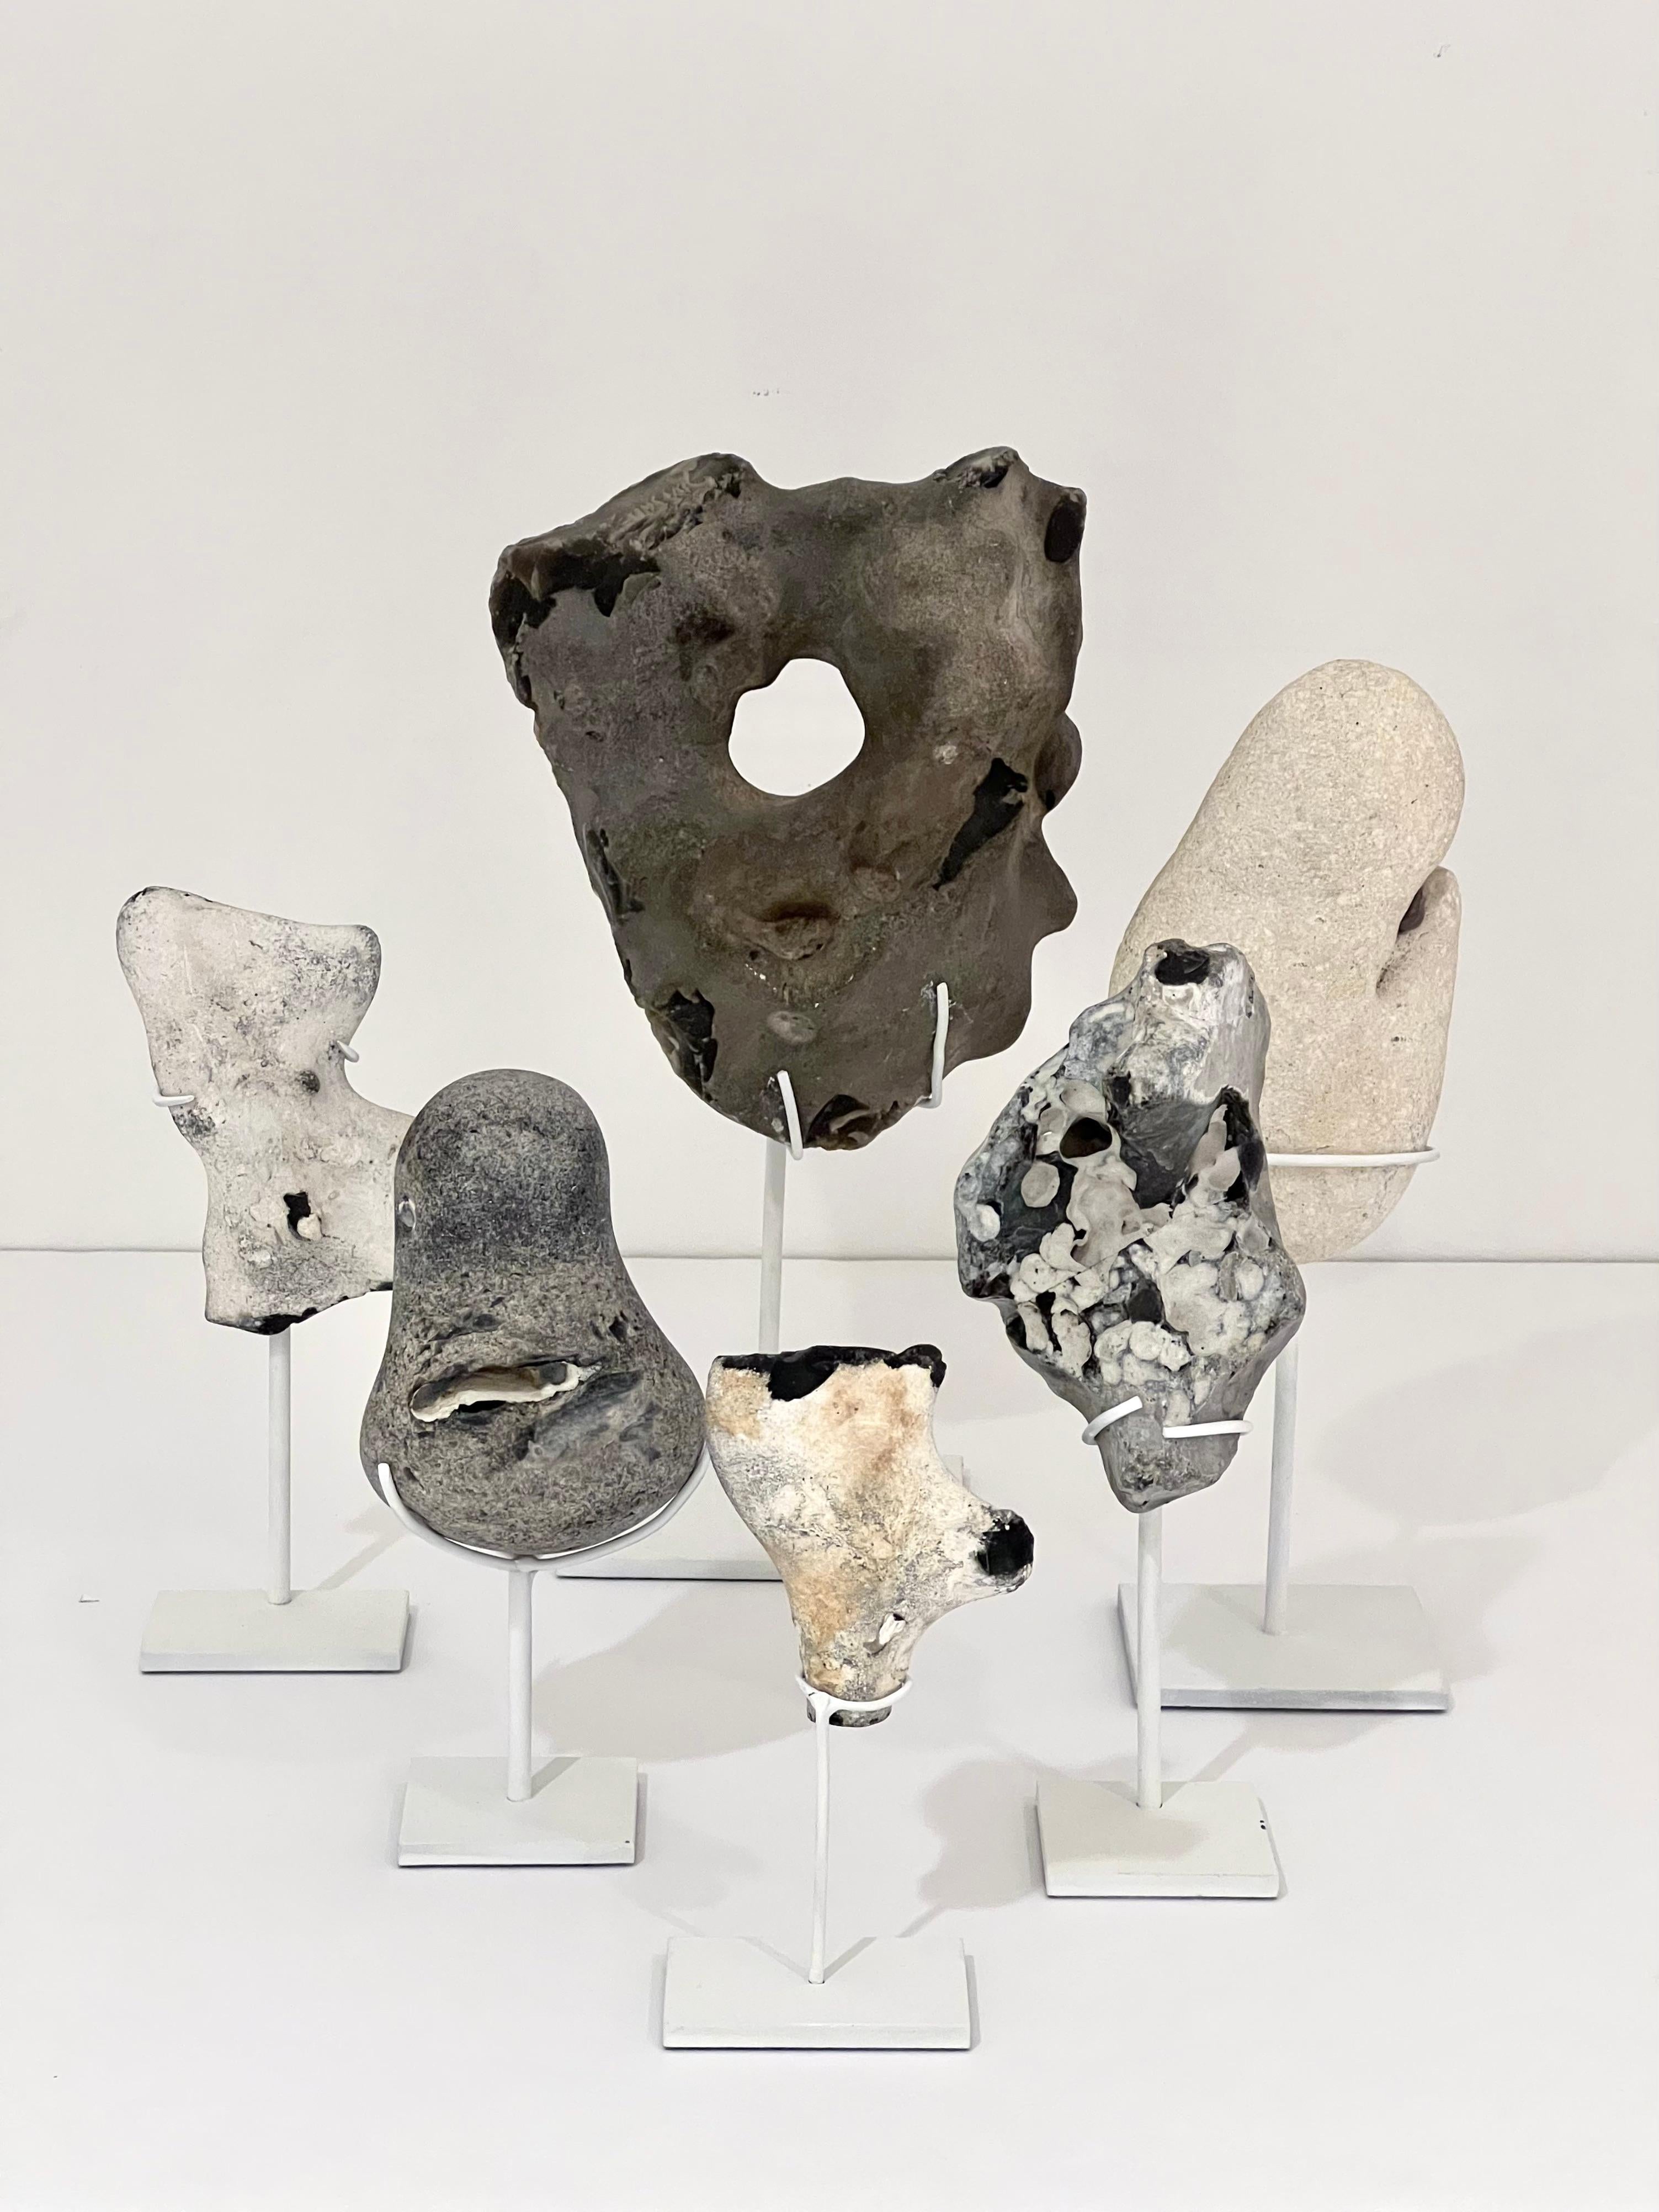 Eine reizvolle Zusammenstellung natürlicher Meeressteine aus Feuerstein und Kreide von den Küsten Dänemarks. Jeder Stein ist ein Unikat, das das Ergebnis jahrelanger Erosion und Formgebung ist. Sie werden als Satz von 6 Steinen auf Metallfassungen